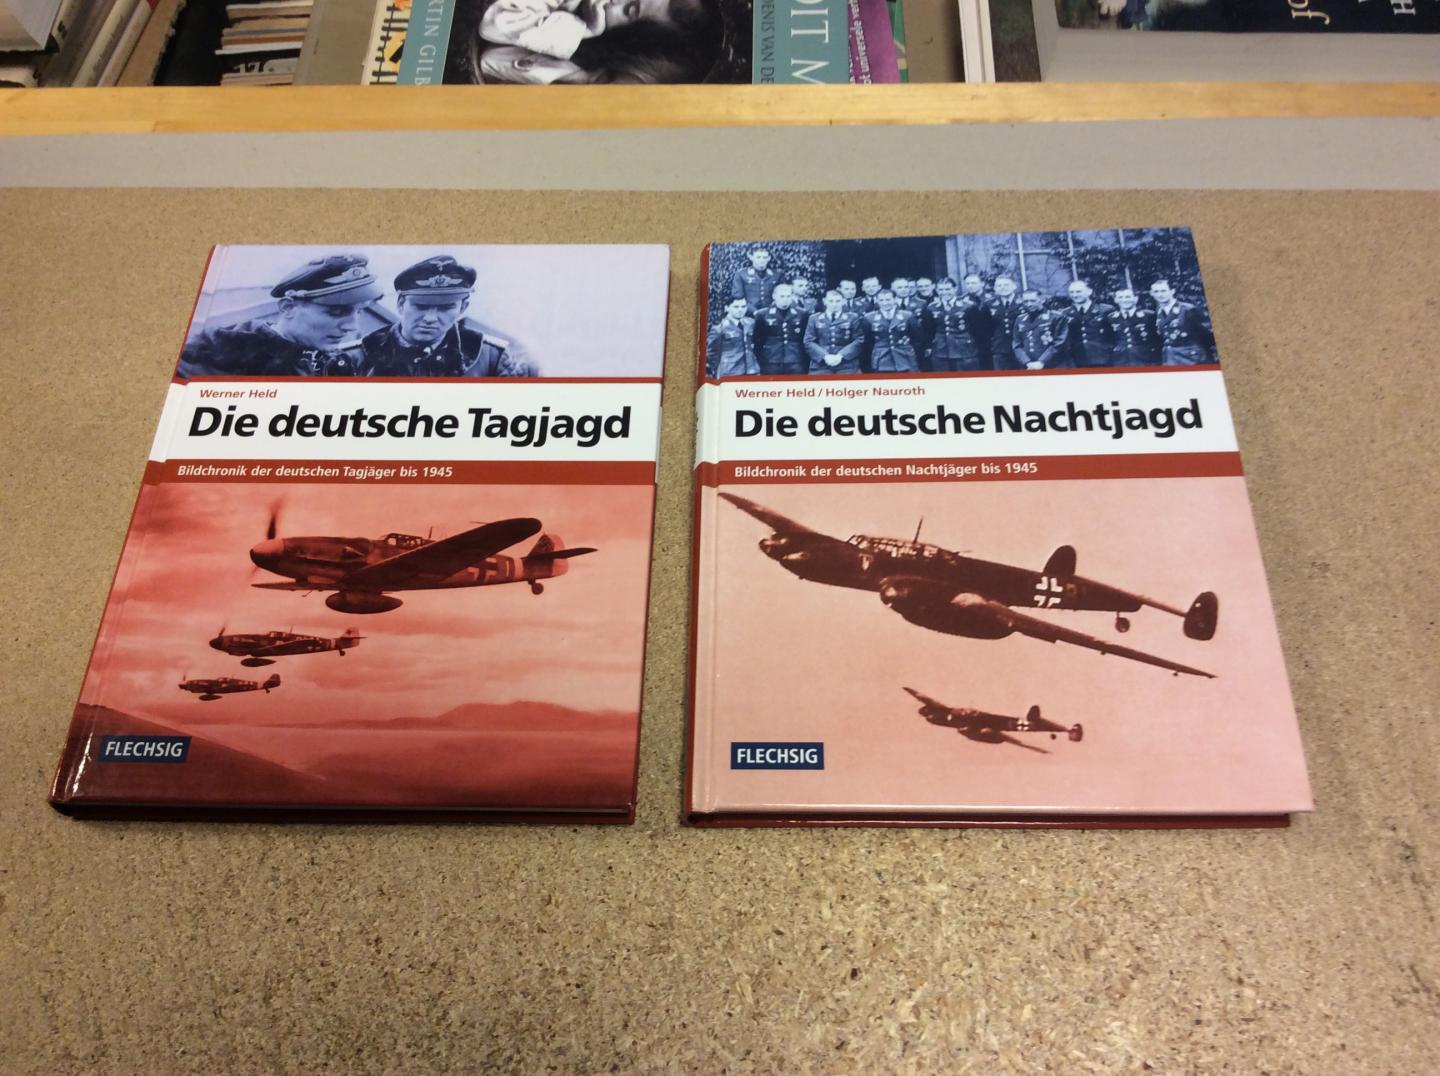 Held, Werner / Holger Nauroth - Die deutsche Tagjagd. Bildchronik der deutschen Tagjäger bis 1945 + Die deutsche Nachtjagd. Bildchronik der deutschen Nachtjäger bis 1945 (2 delen)